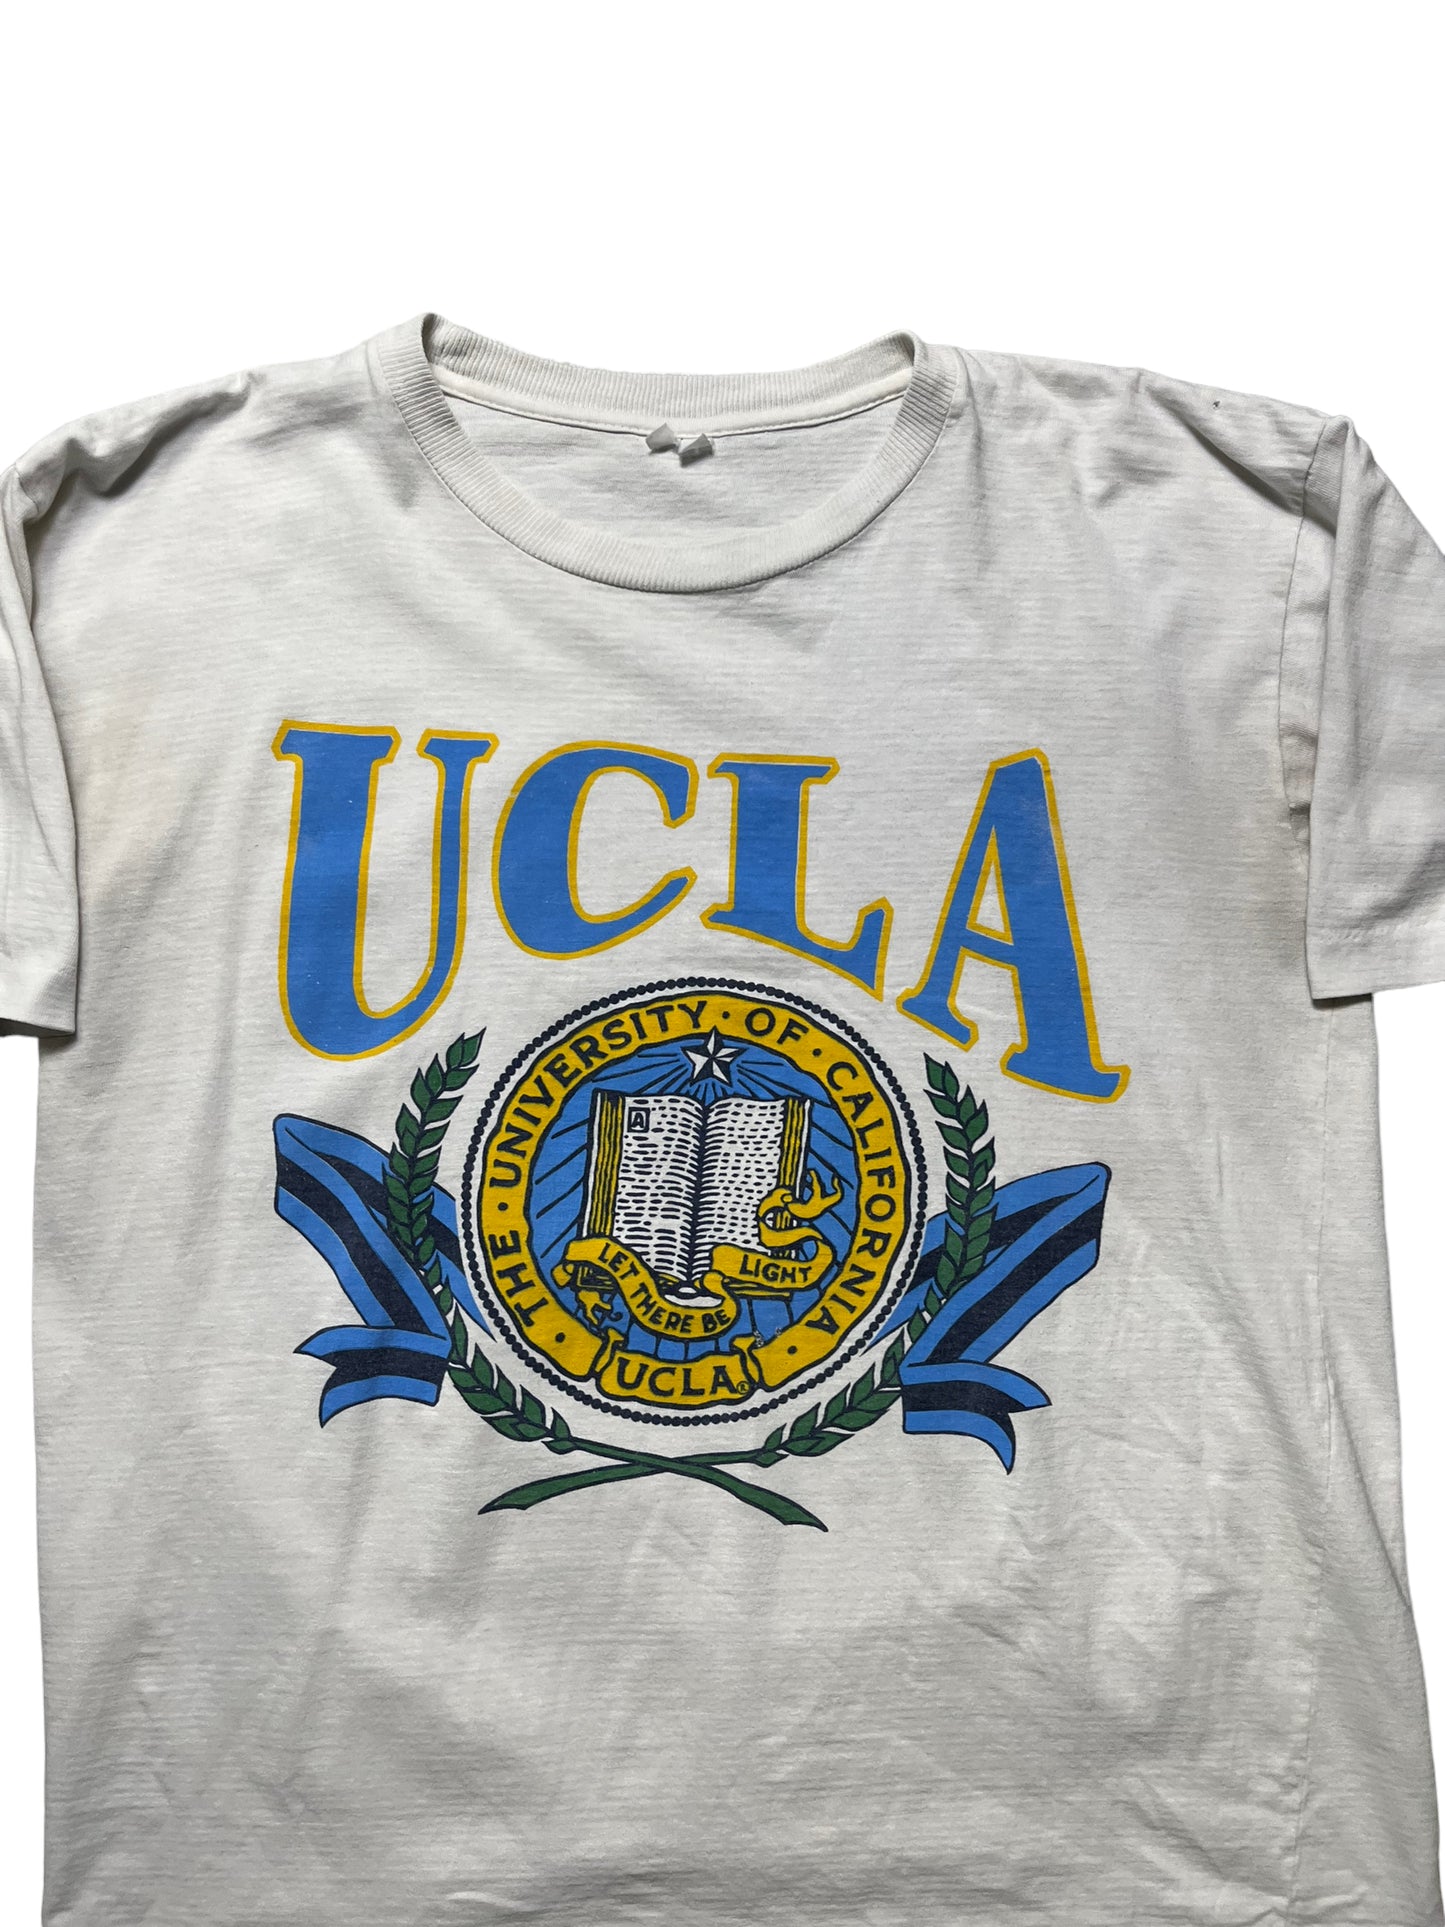 (S) Vintage UCLA Tee